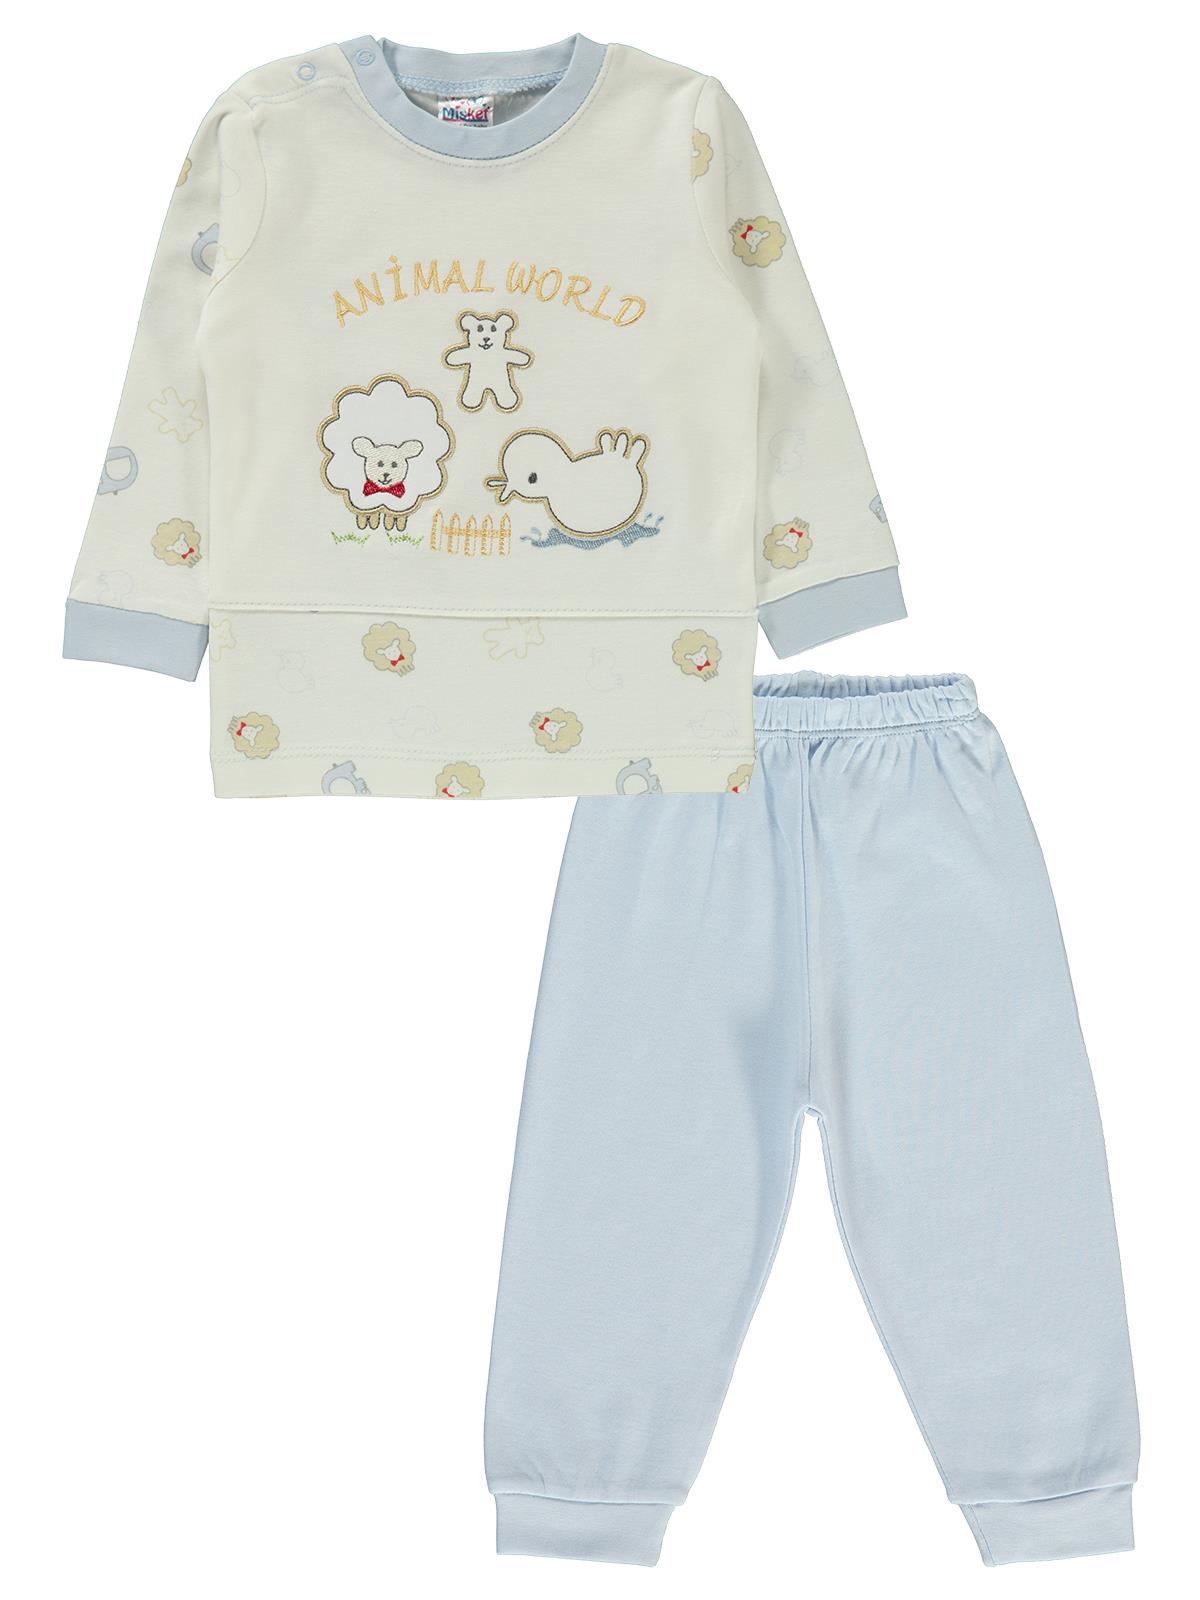 Misket Erkek Bebek Pijama Takımı 6-18 Ay Mavi